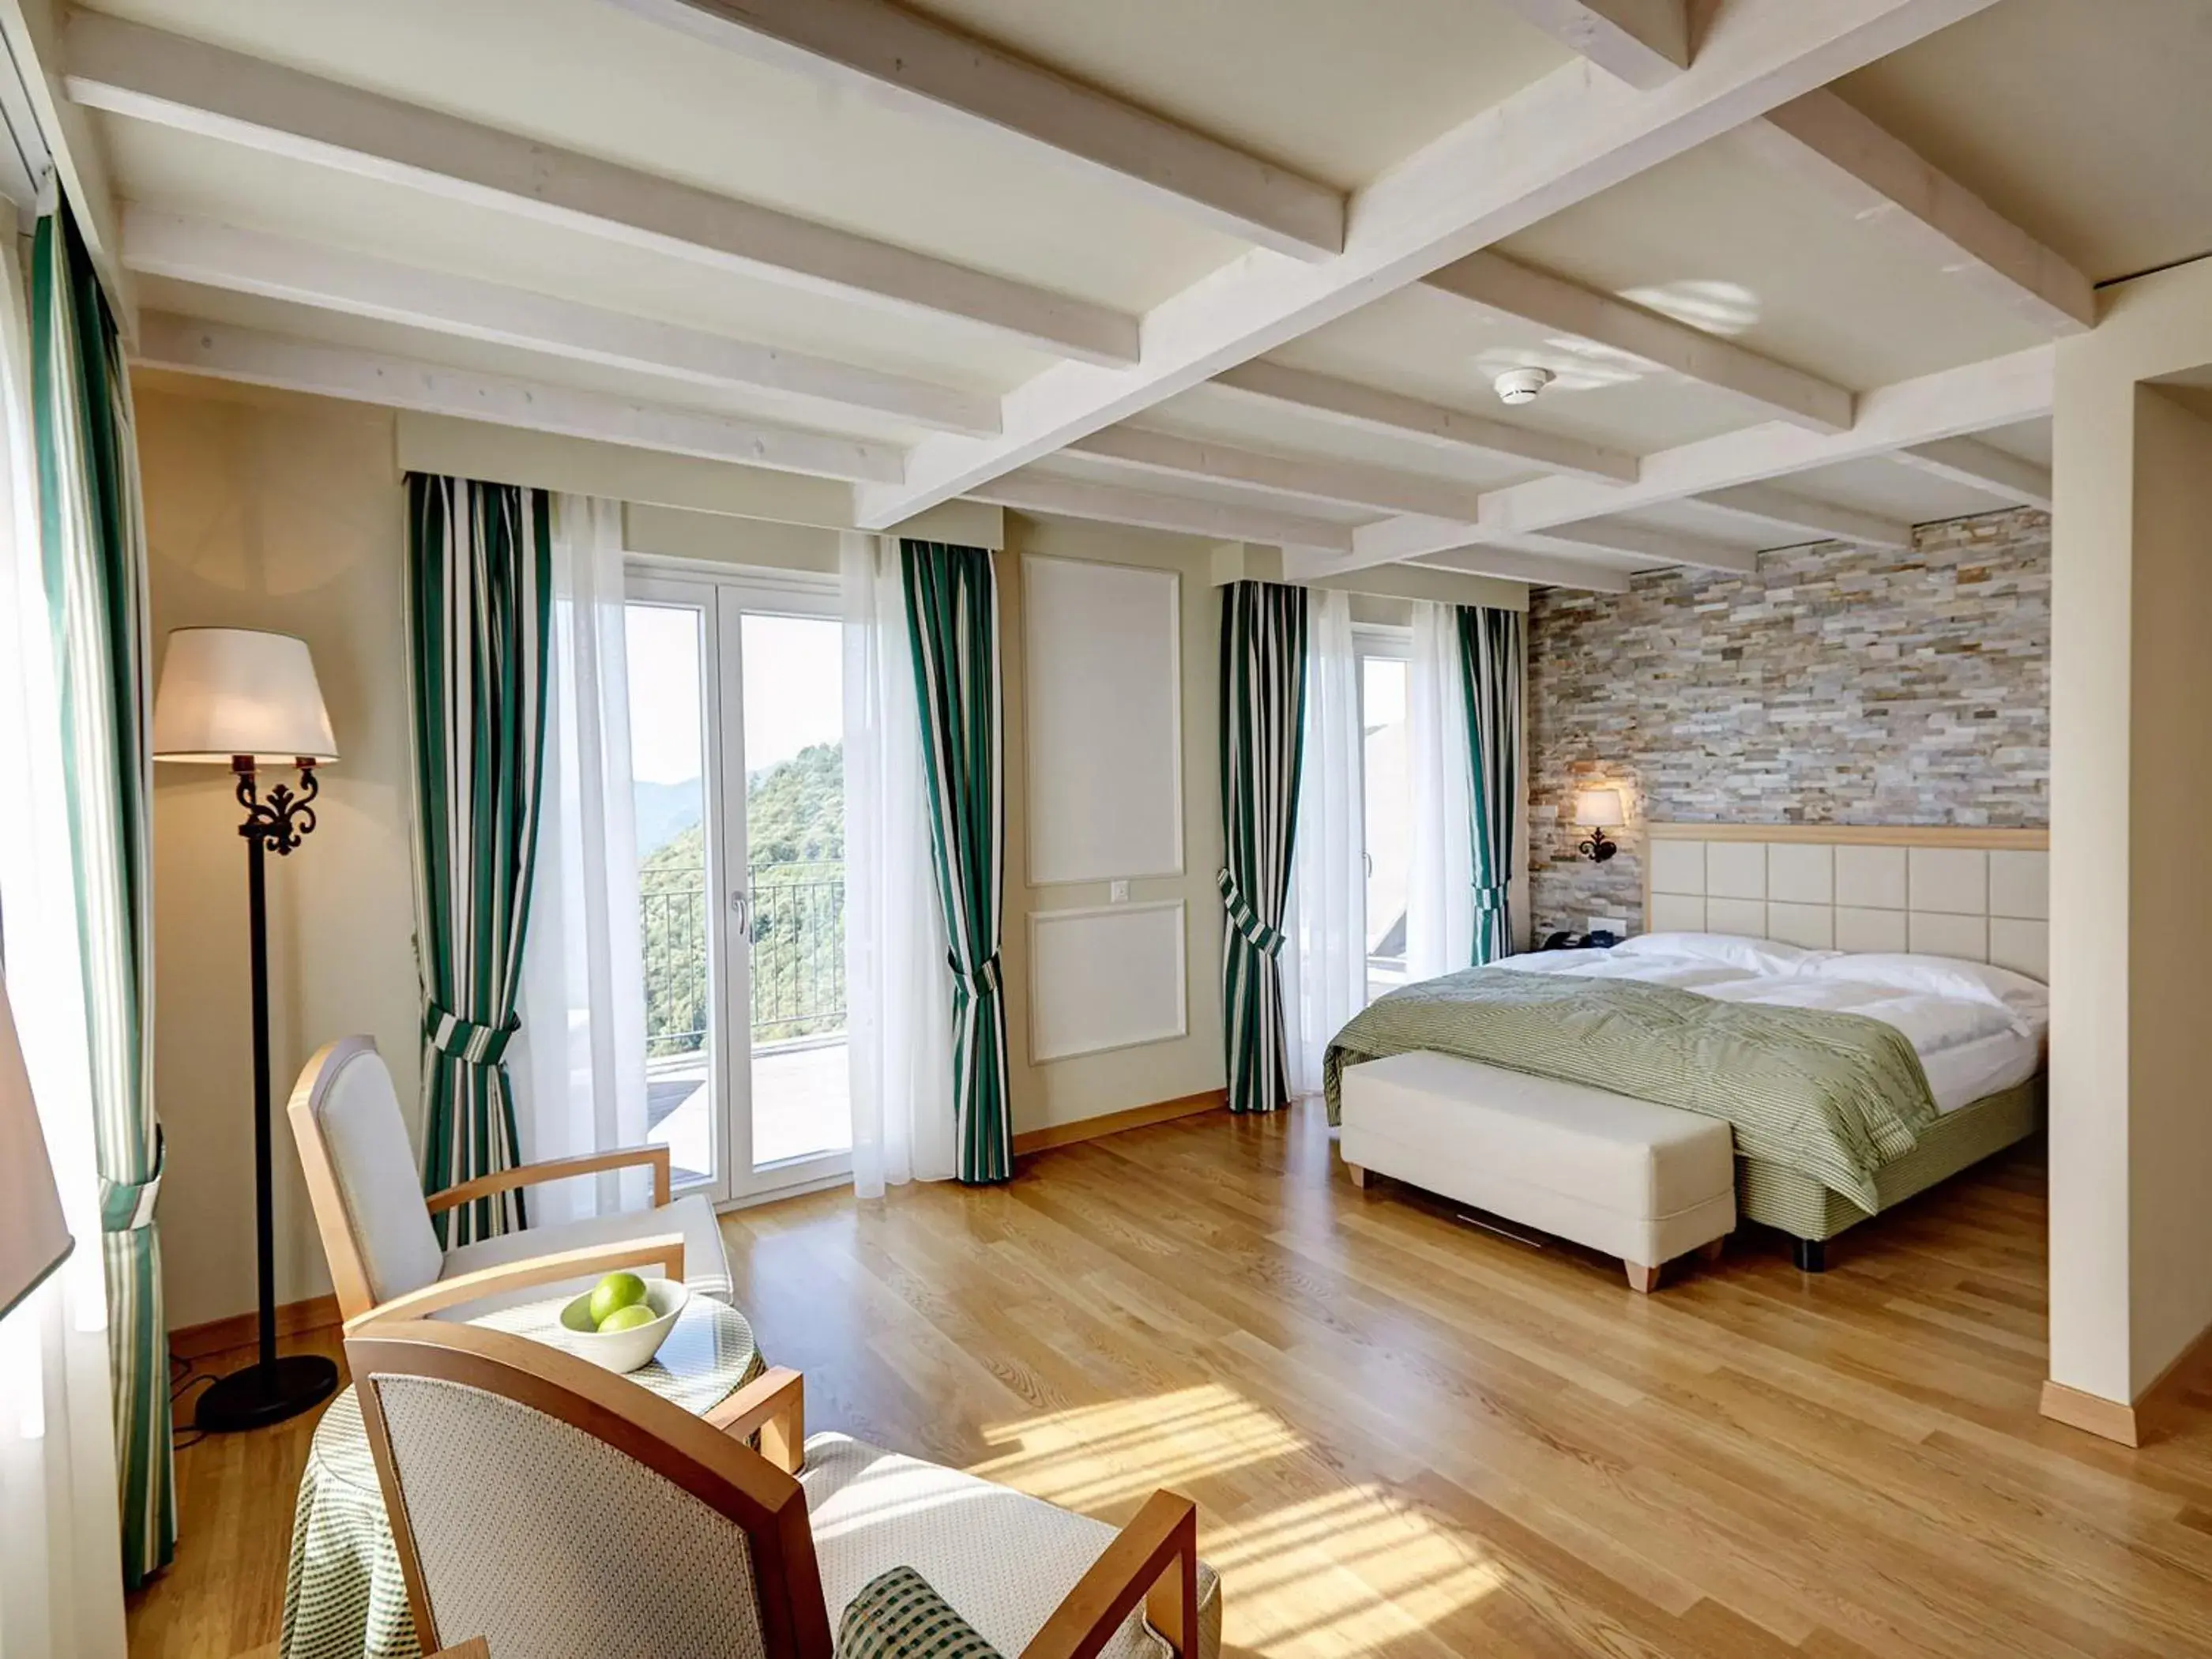 Bedroom in Kurhaus Cademario Hotel & DOT Spa - Ticino Hotels Group